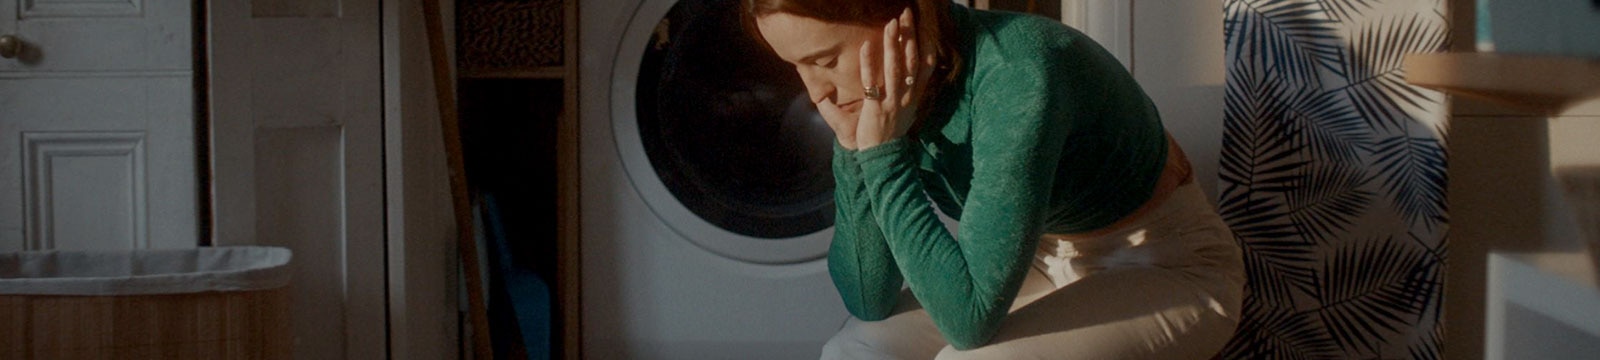 Vyčerpaná žena sedí sama v prádelně